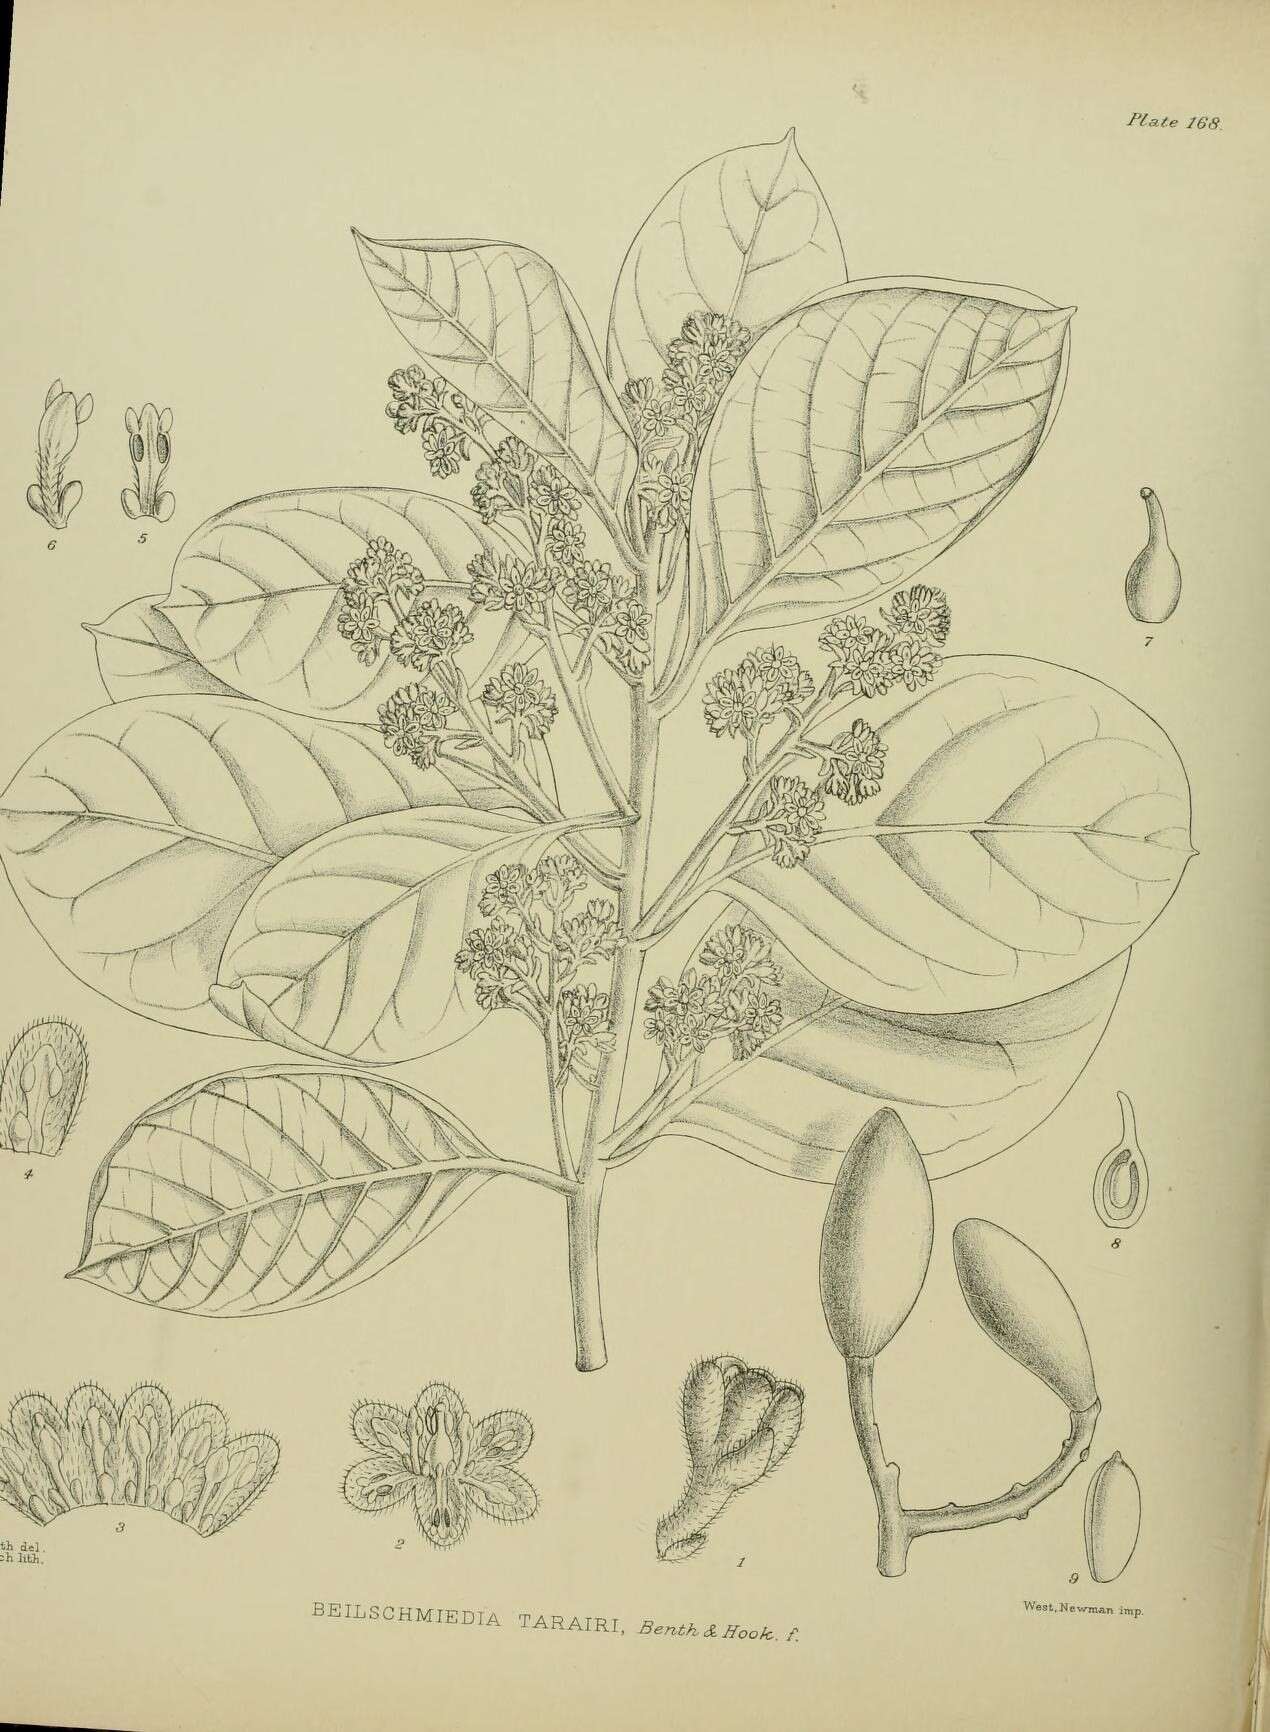 Sivun Beilschmiedia tarairi (A. Cunn.) Kirk kuva